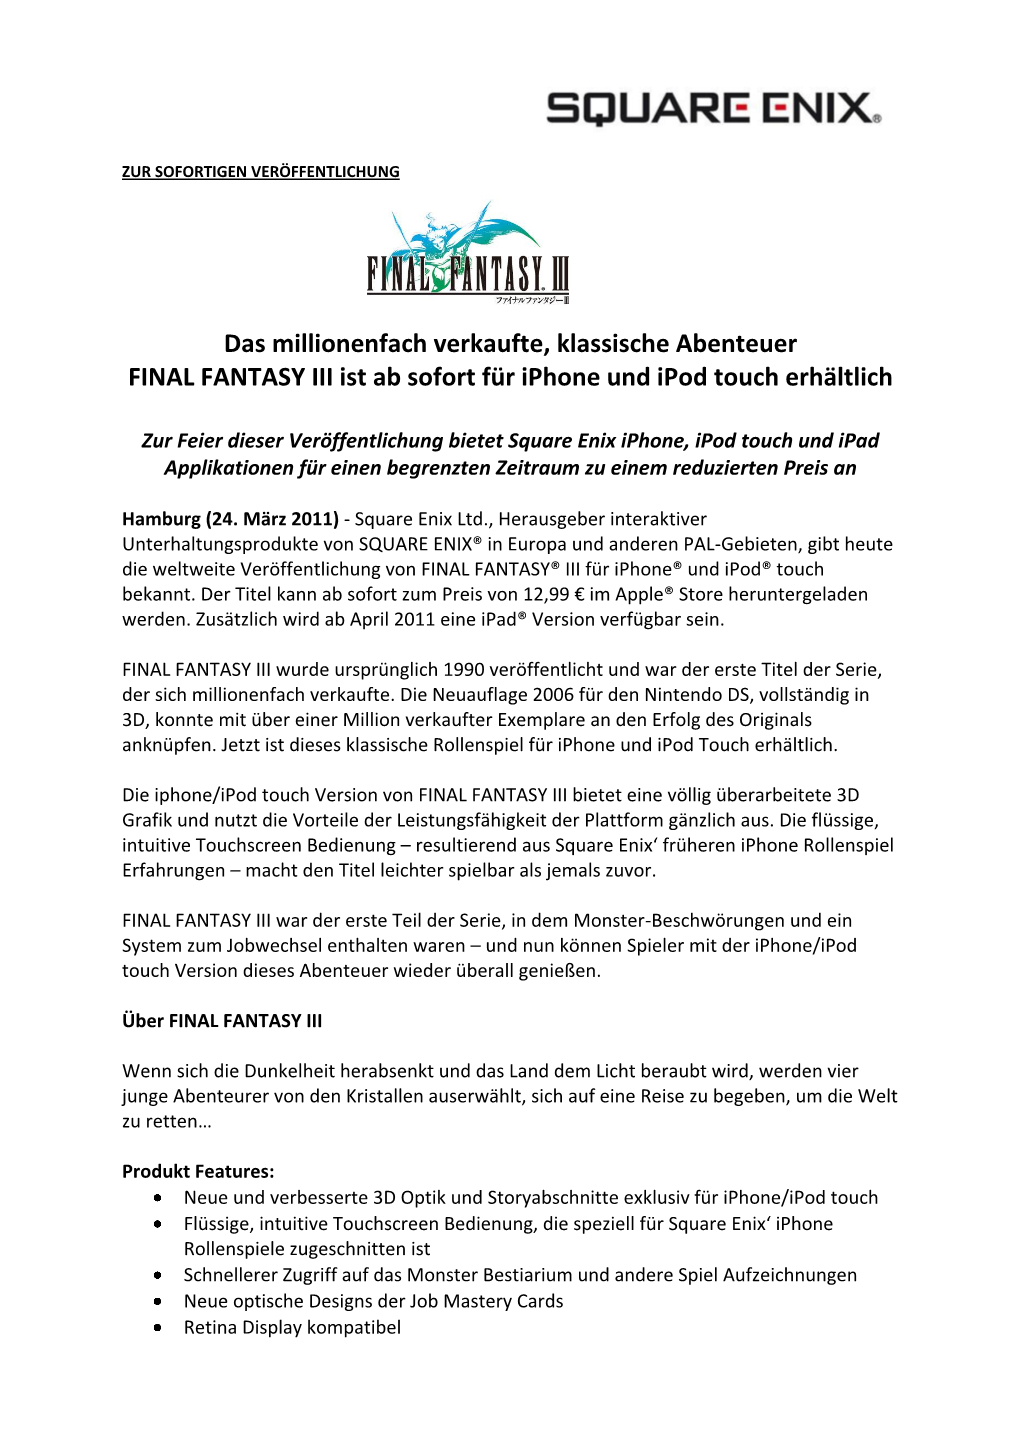 Das Millionenfach Verkaufte, Klassische Abenteuer FINAL FANTASY III Ist Ab Sofort Für Iphone Und Ipod Touch Erhältlich